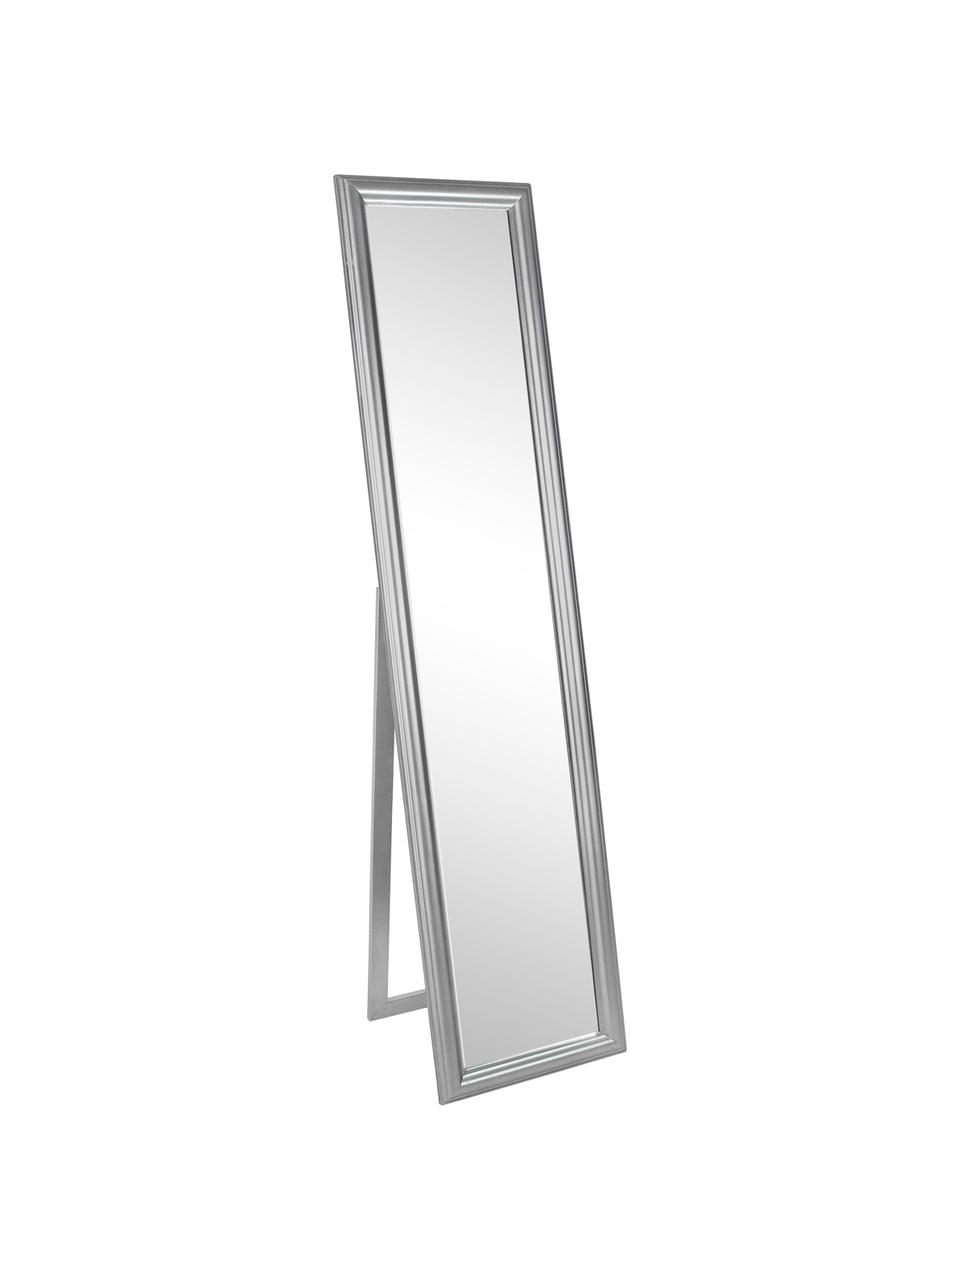 Eckiger Standspiegel Sanzio mit silbernem Paulowniaholzrahmen, Rahmen: Paulowniaholz, beschichte, Spiegelfläche: Spiegelglas, Silberfarben, B 40 x H 170 cm